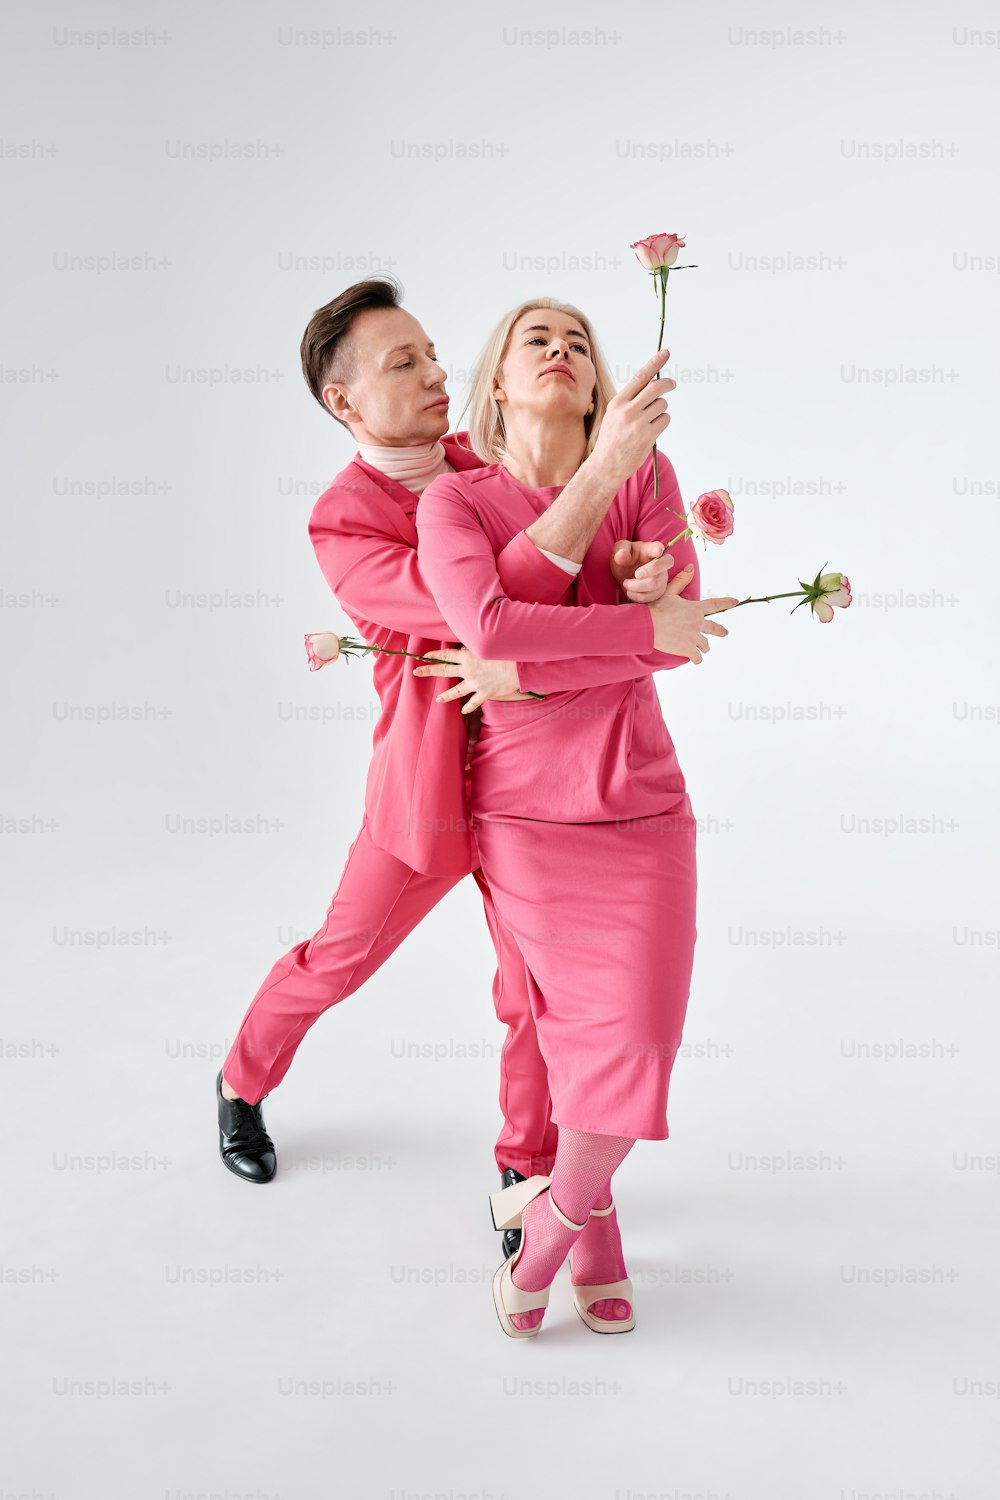 분홍색 옷을 입은 남자와 여자가 사진을 찍기 위해 포즈를 취하고 있다